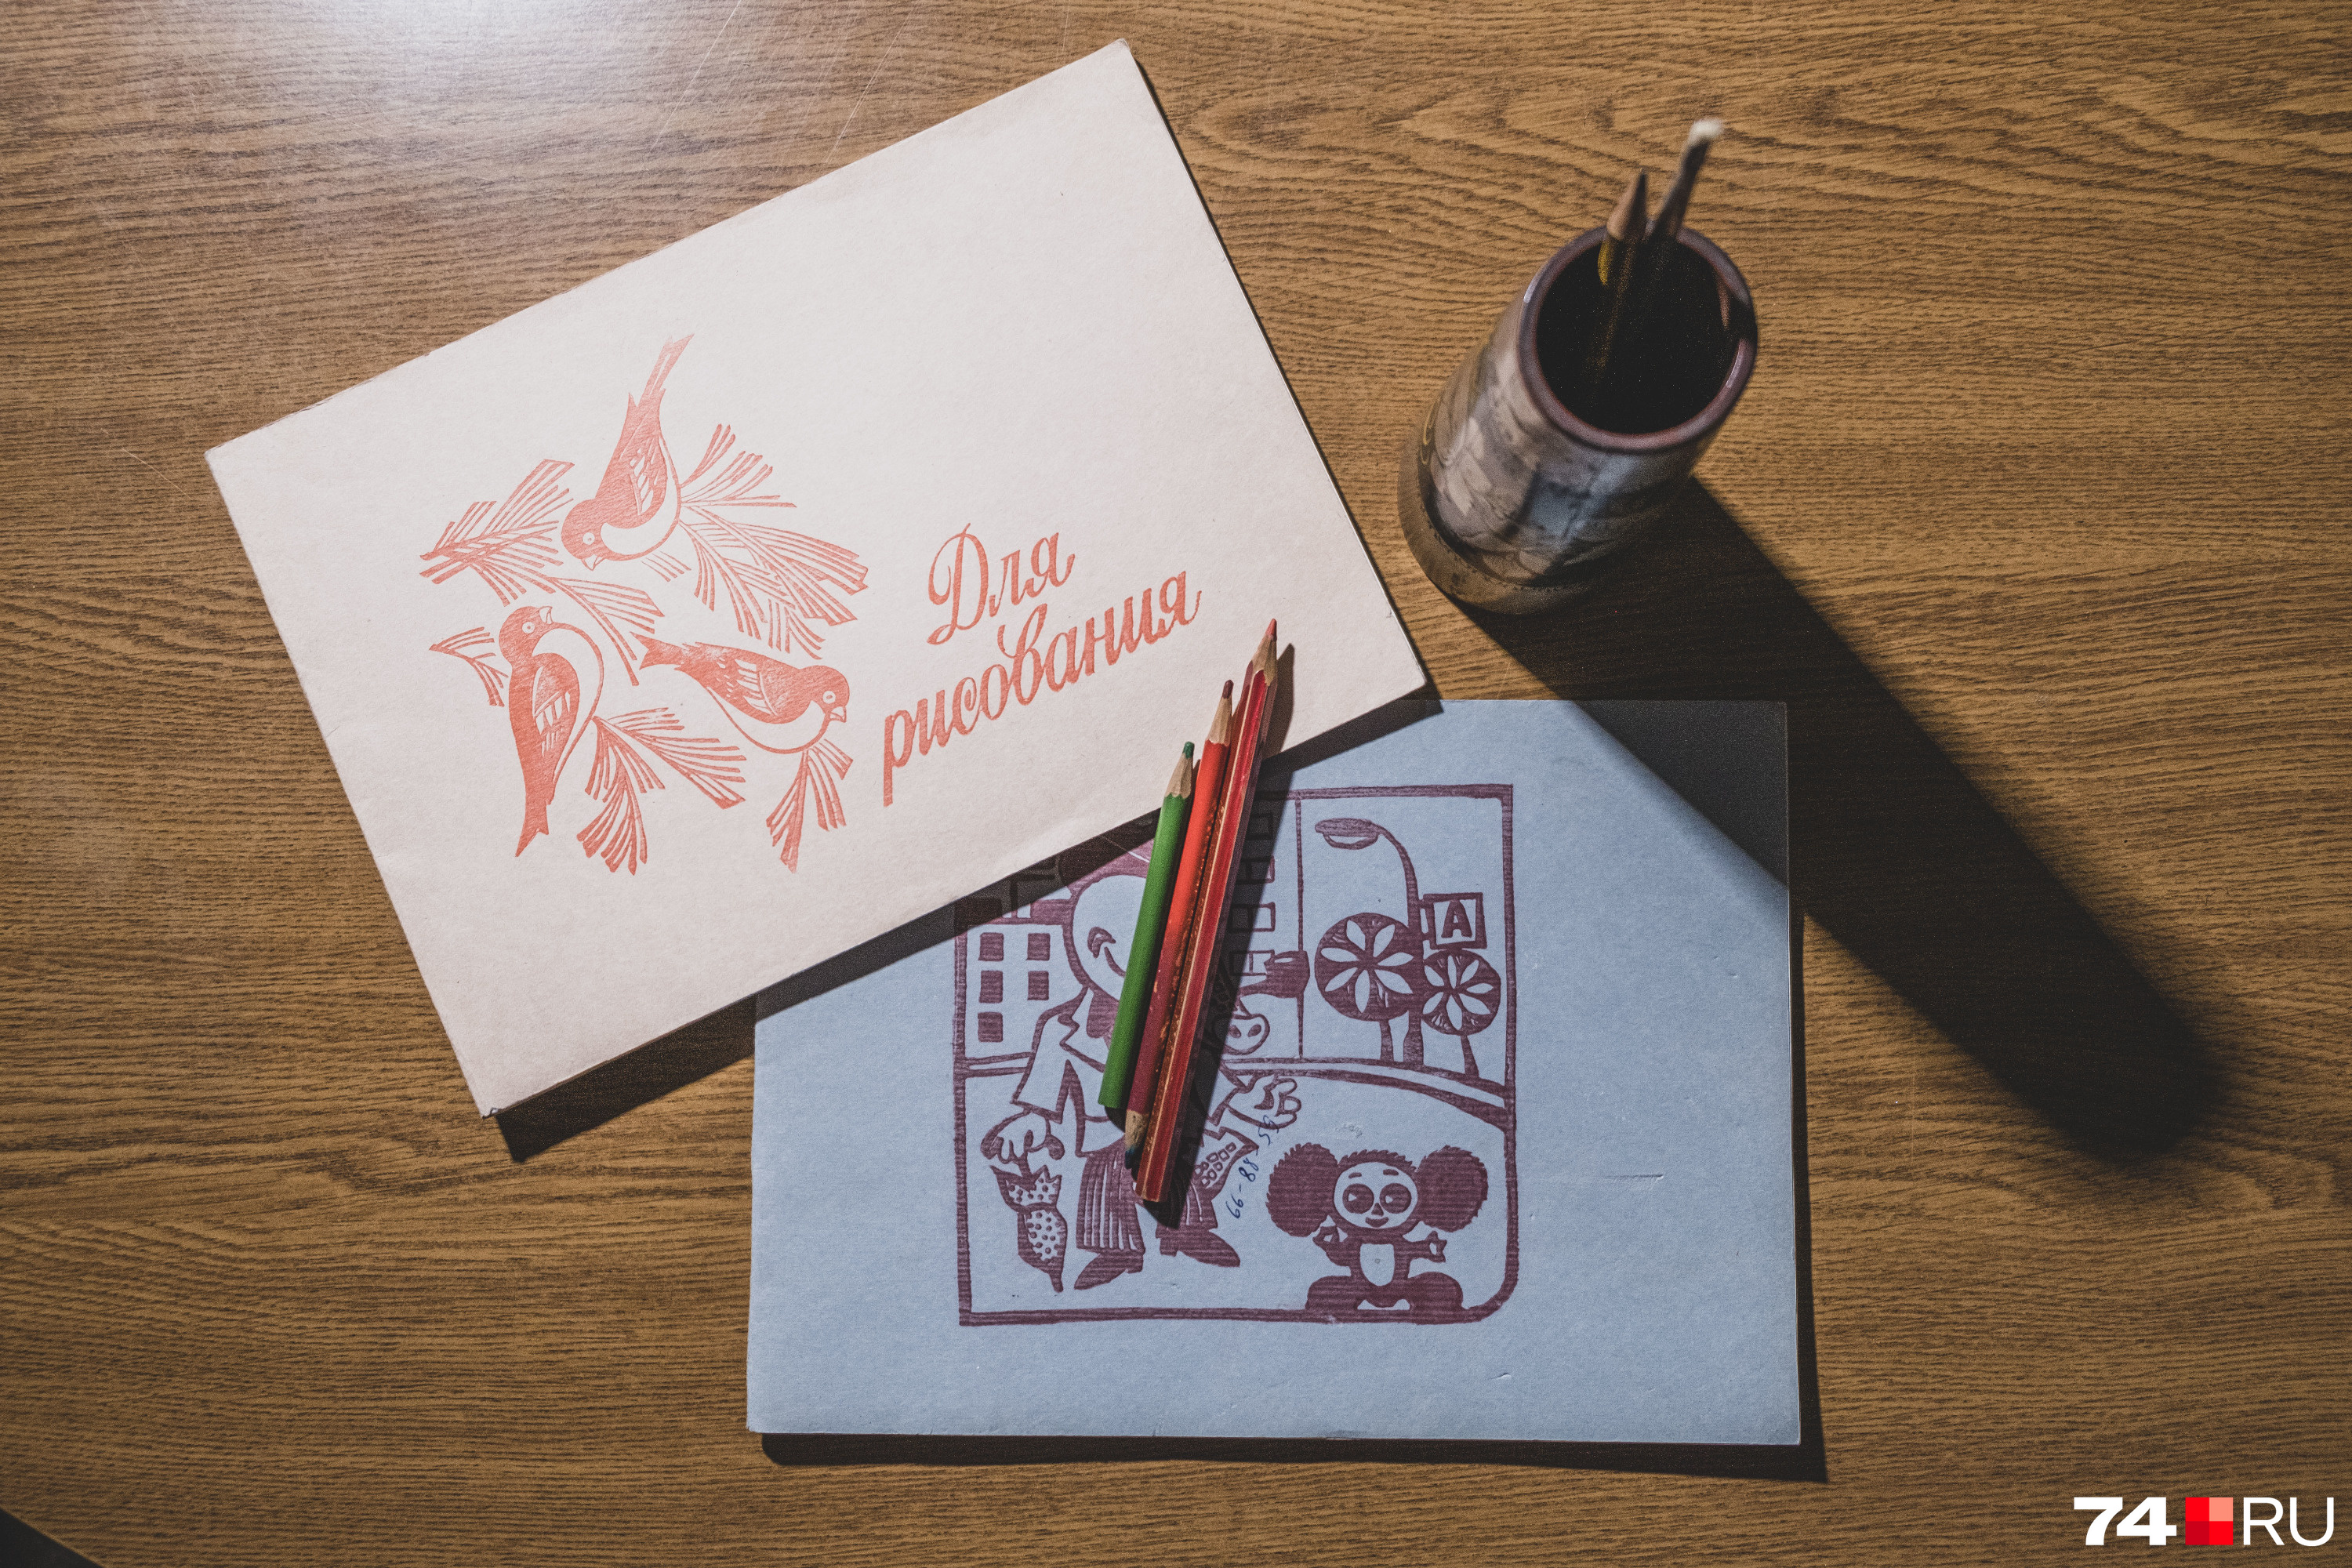 Рисование — еще один популярный вариант досуга советского ребенка